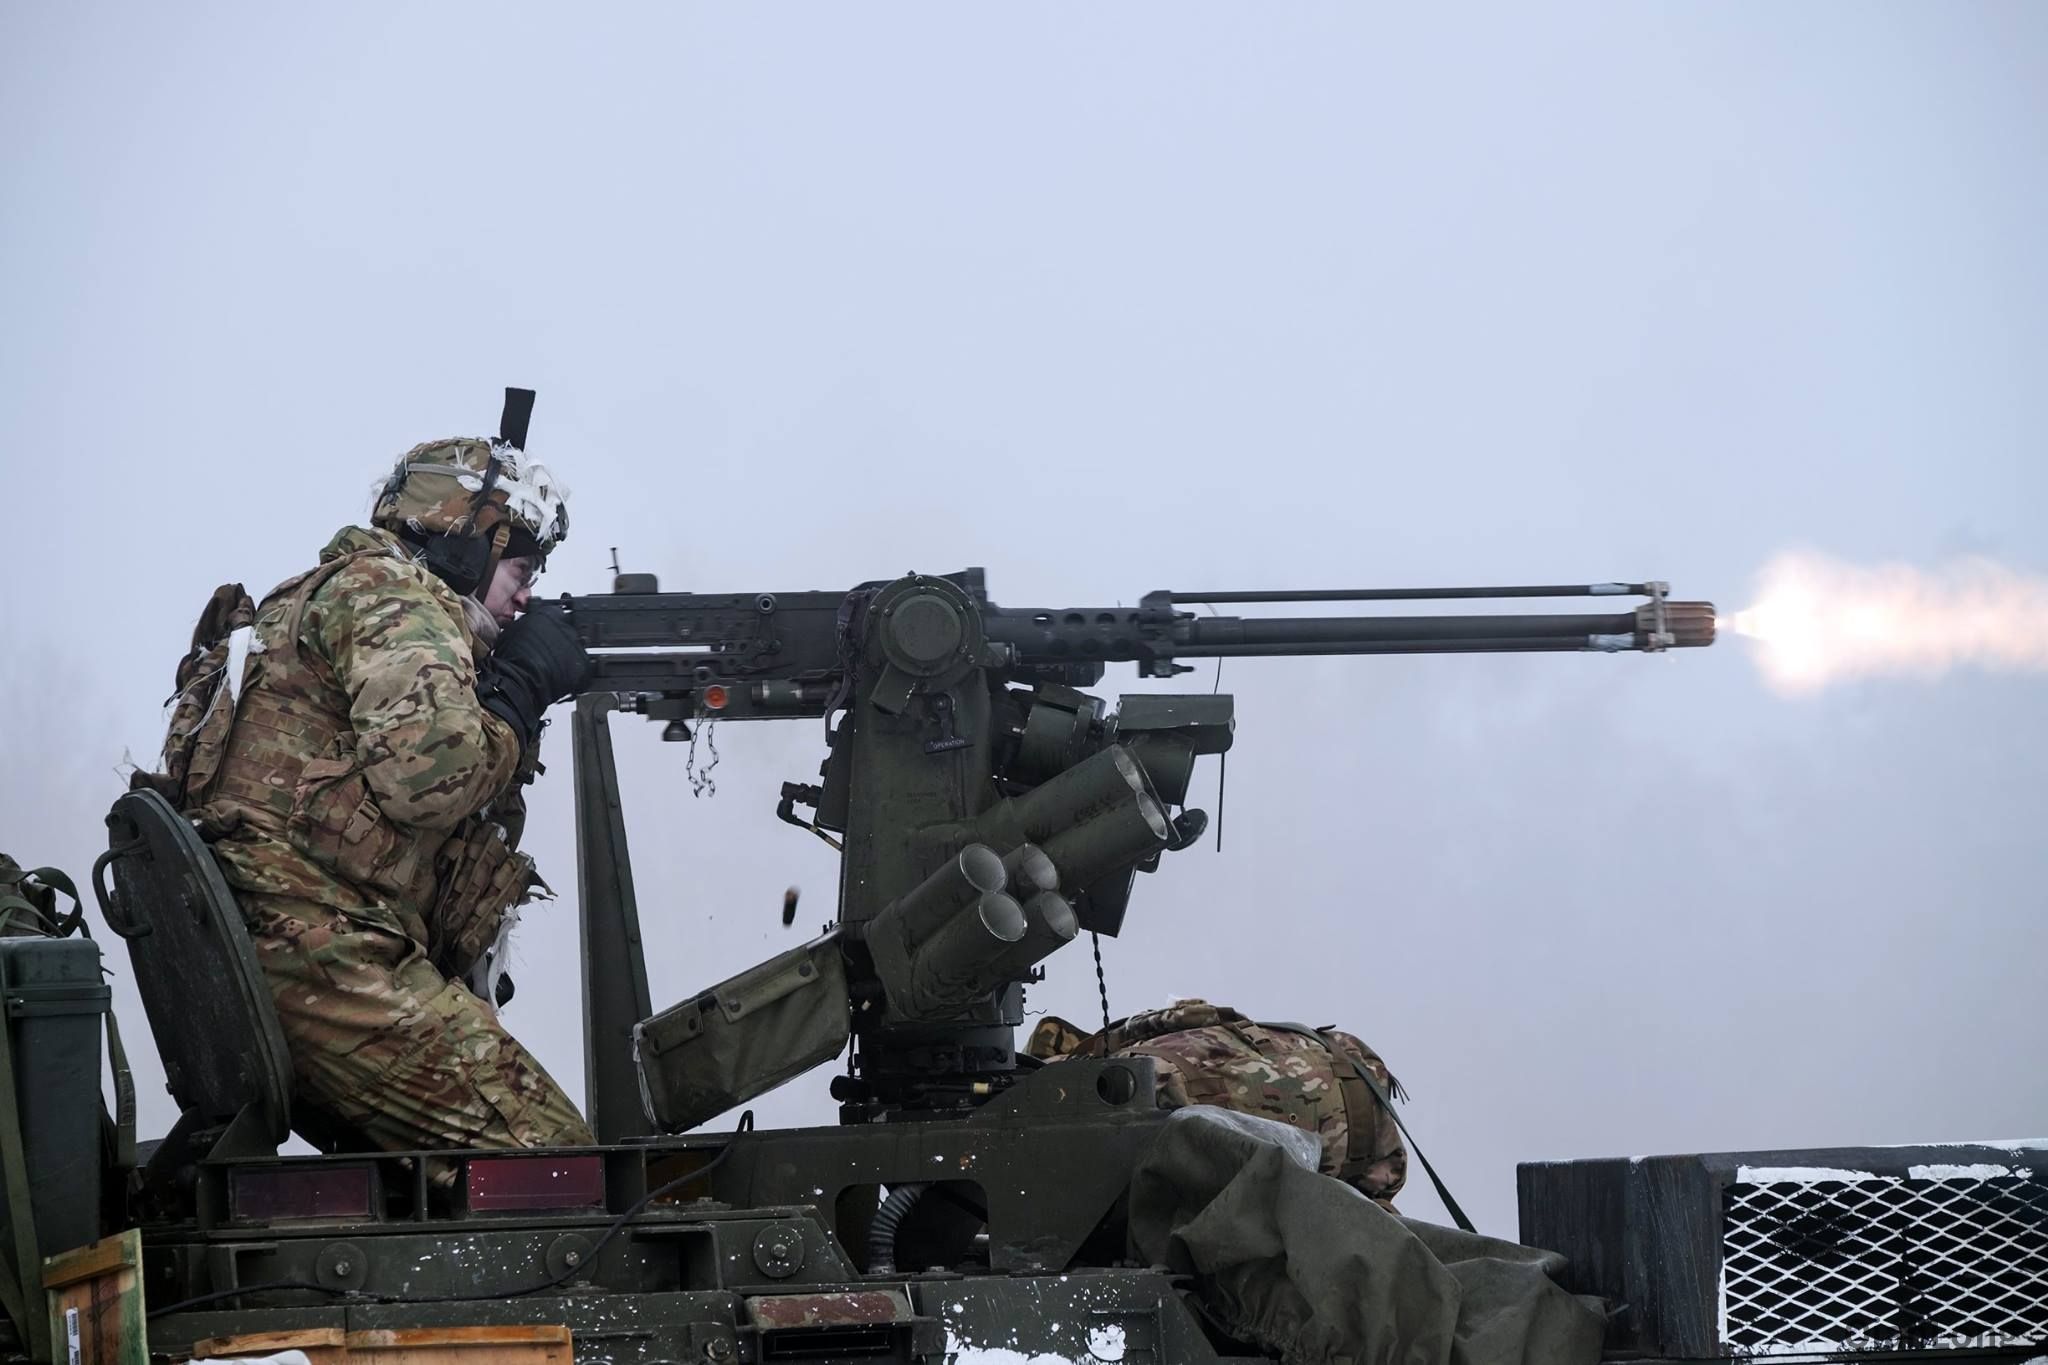 在德国演习的美国陆军 m2010 esr步枪低调出境( 1 / 15 )